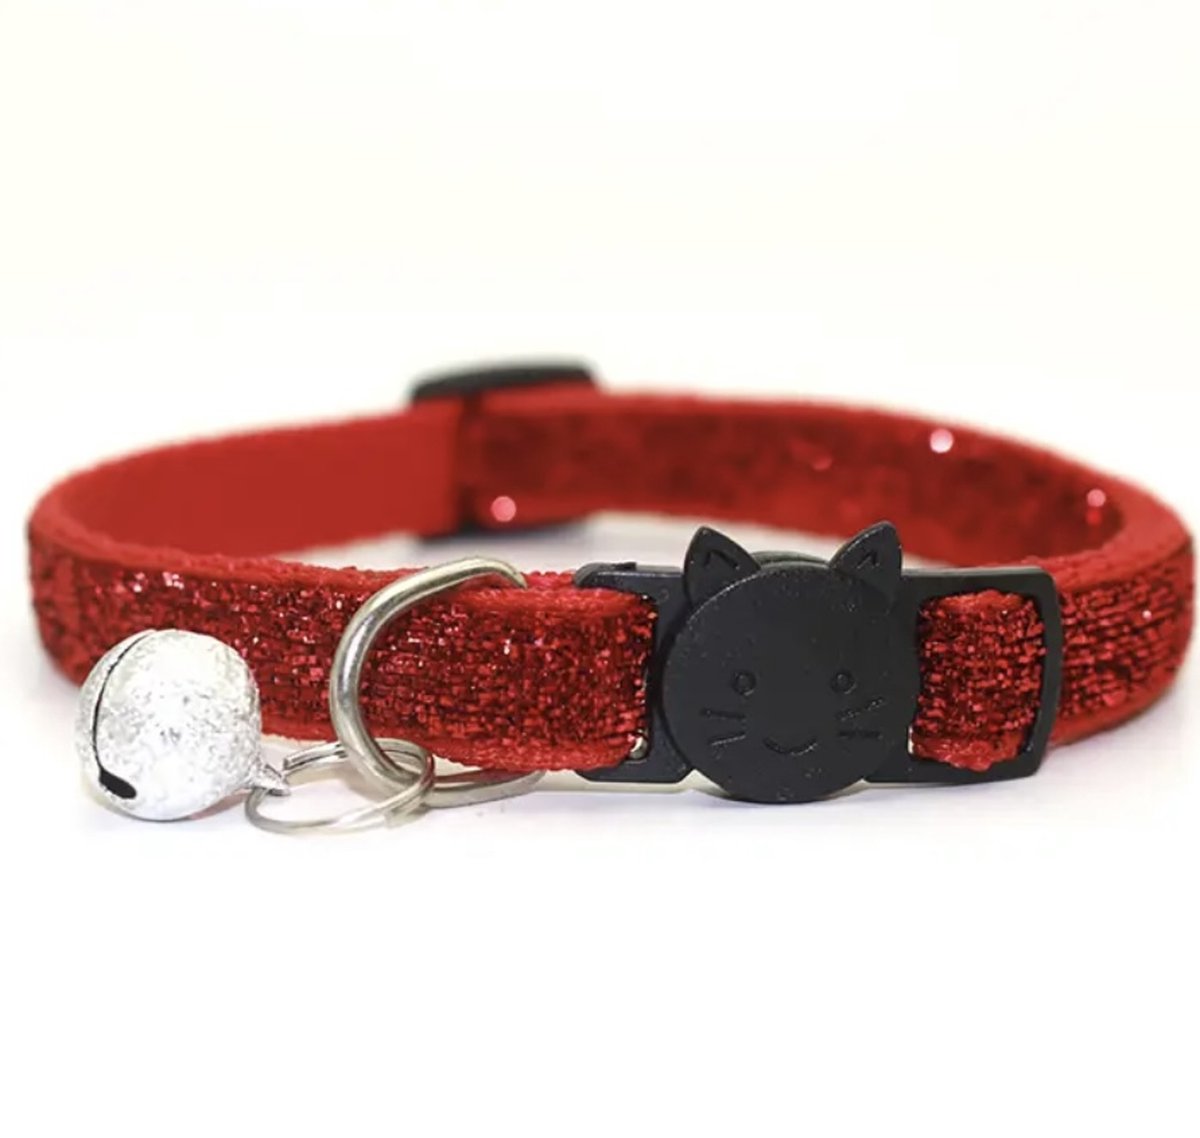 Kattenhalsband met belletje / Rood kattenhalsbandje / Halsband voor katten / Halsband voor poezen